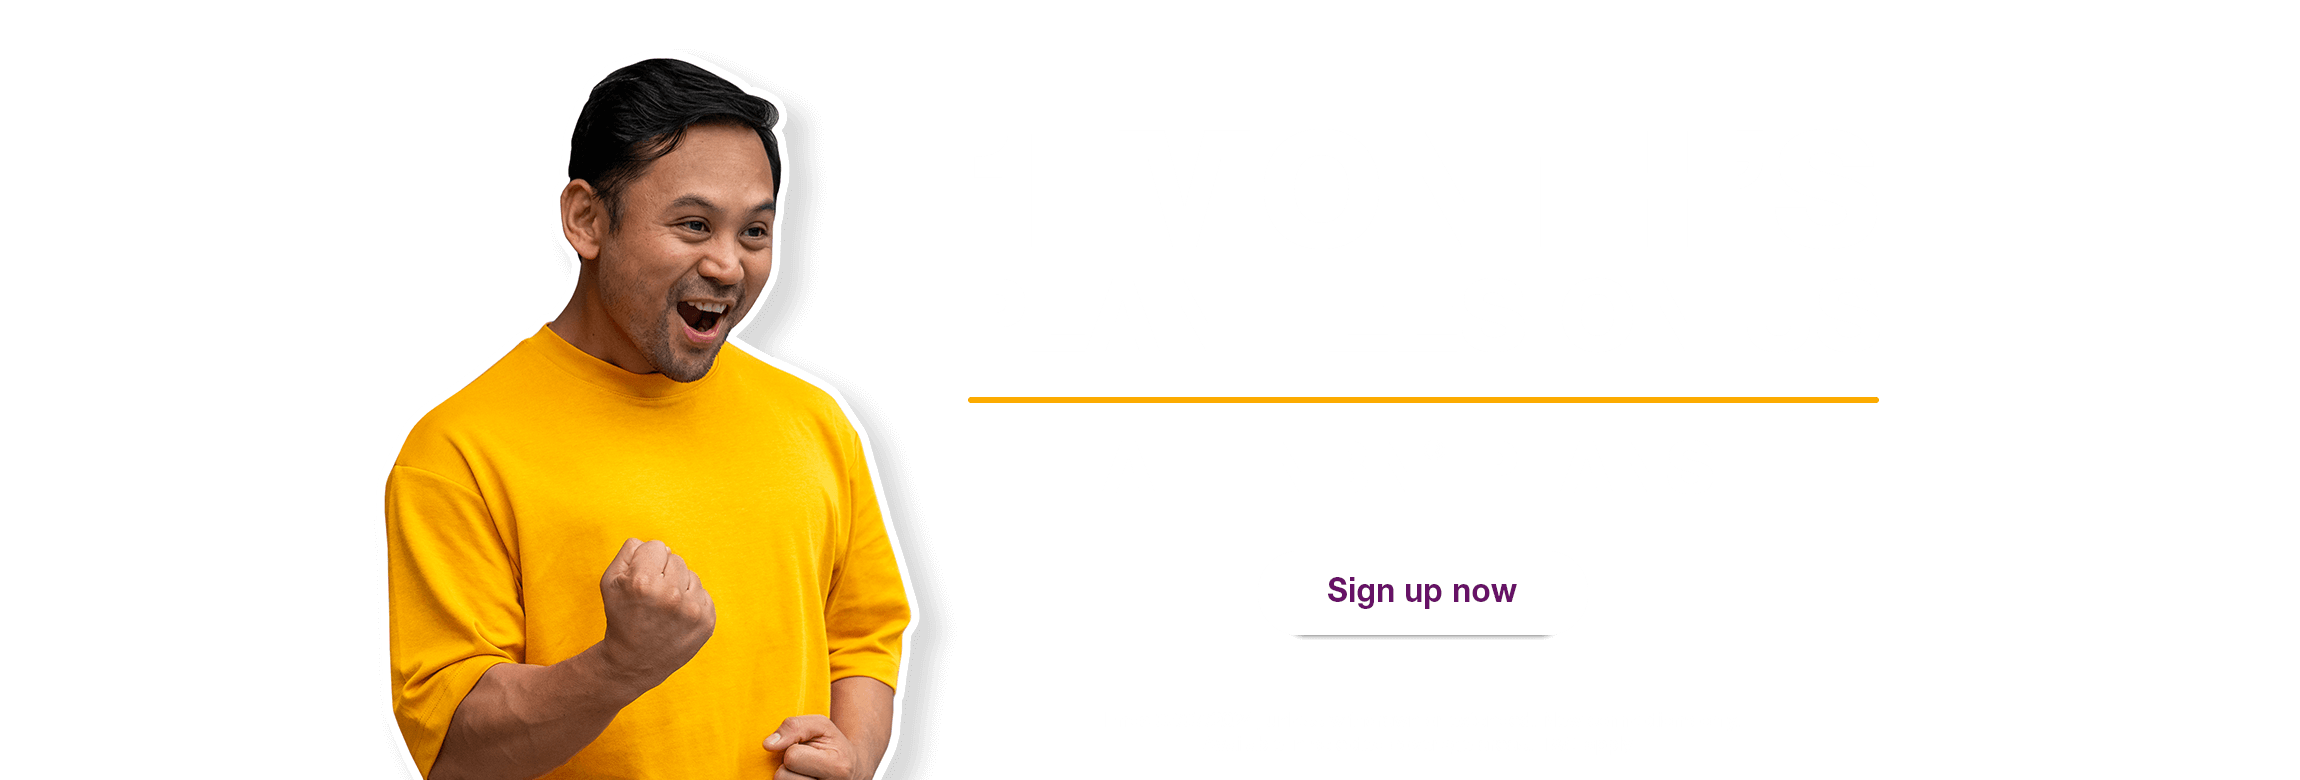 TPG nbn® plans offer 